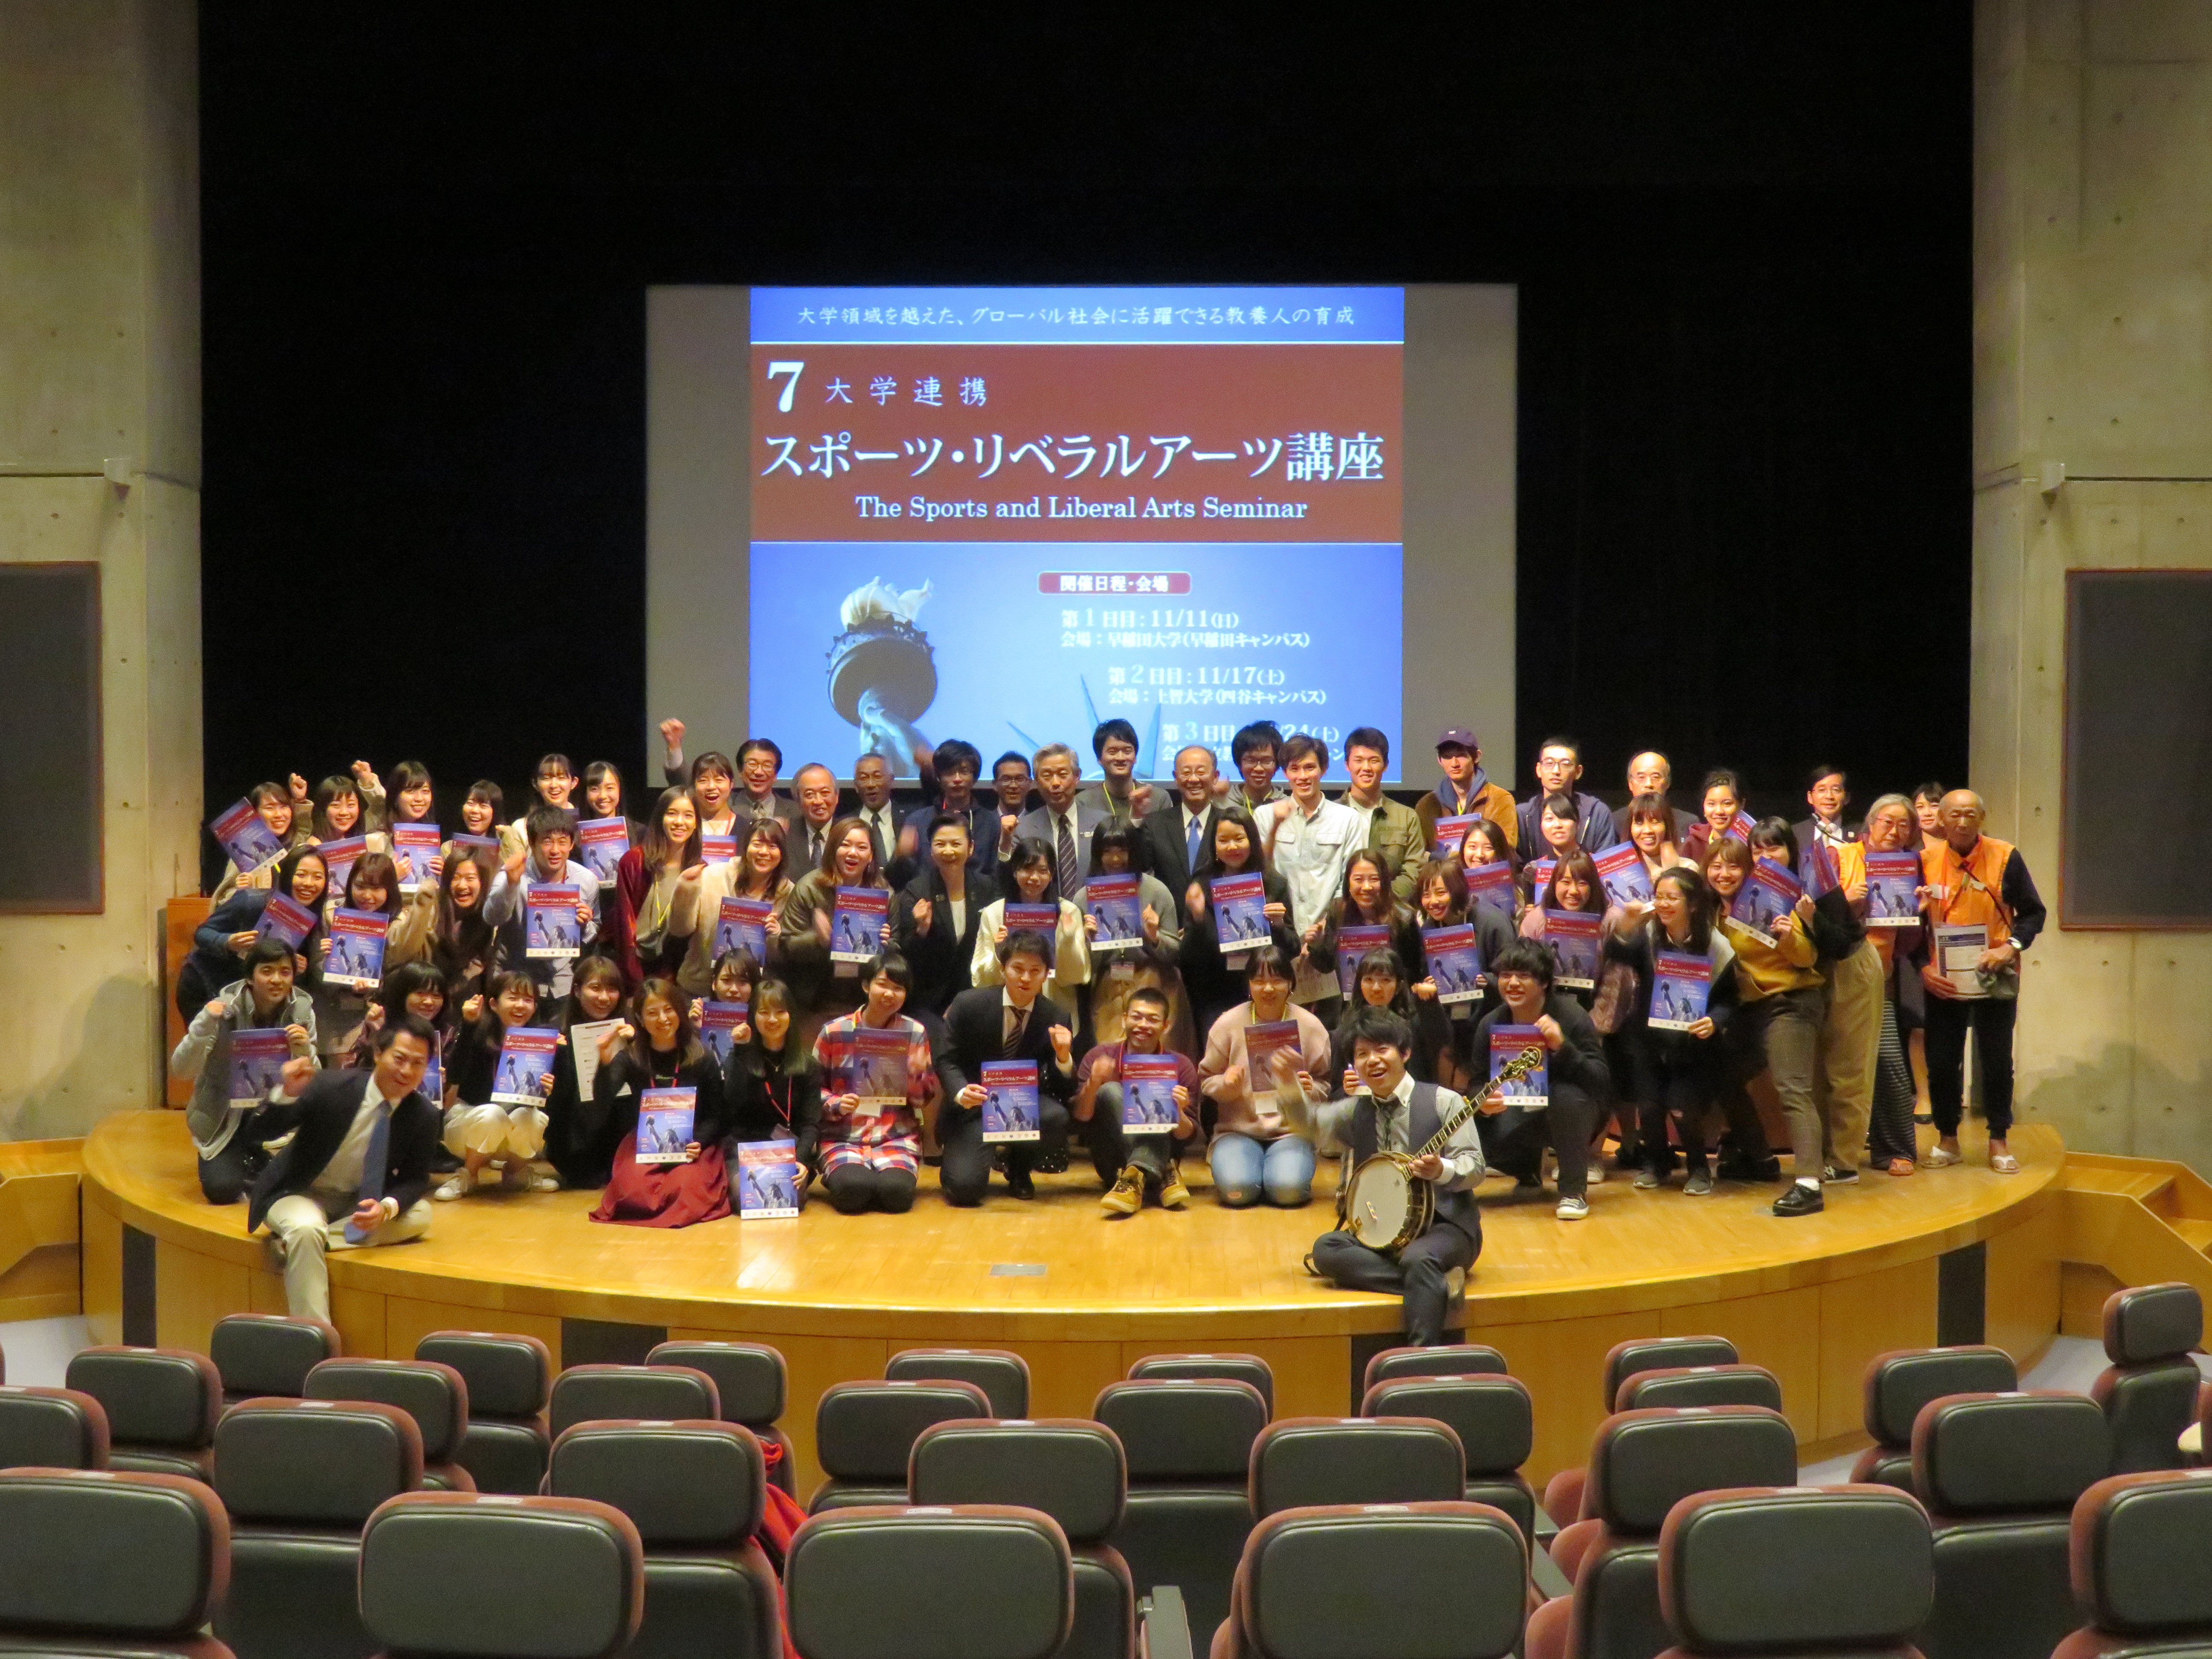 早稲田大学において 7大学連携スポーツ リベラルアーツ講座 が開催されました ニュース 神田外語大学